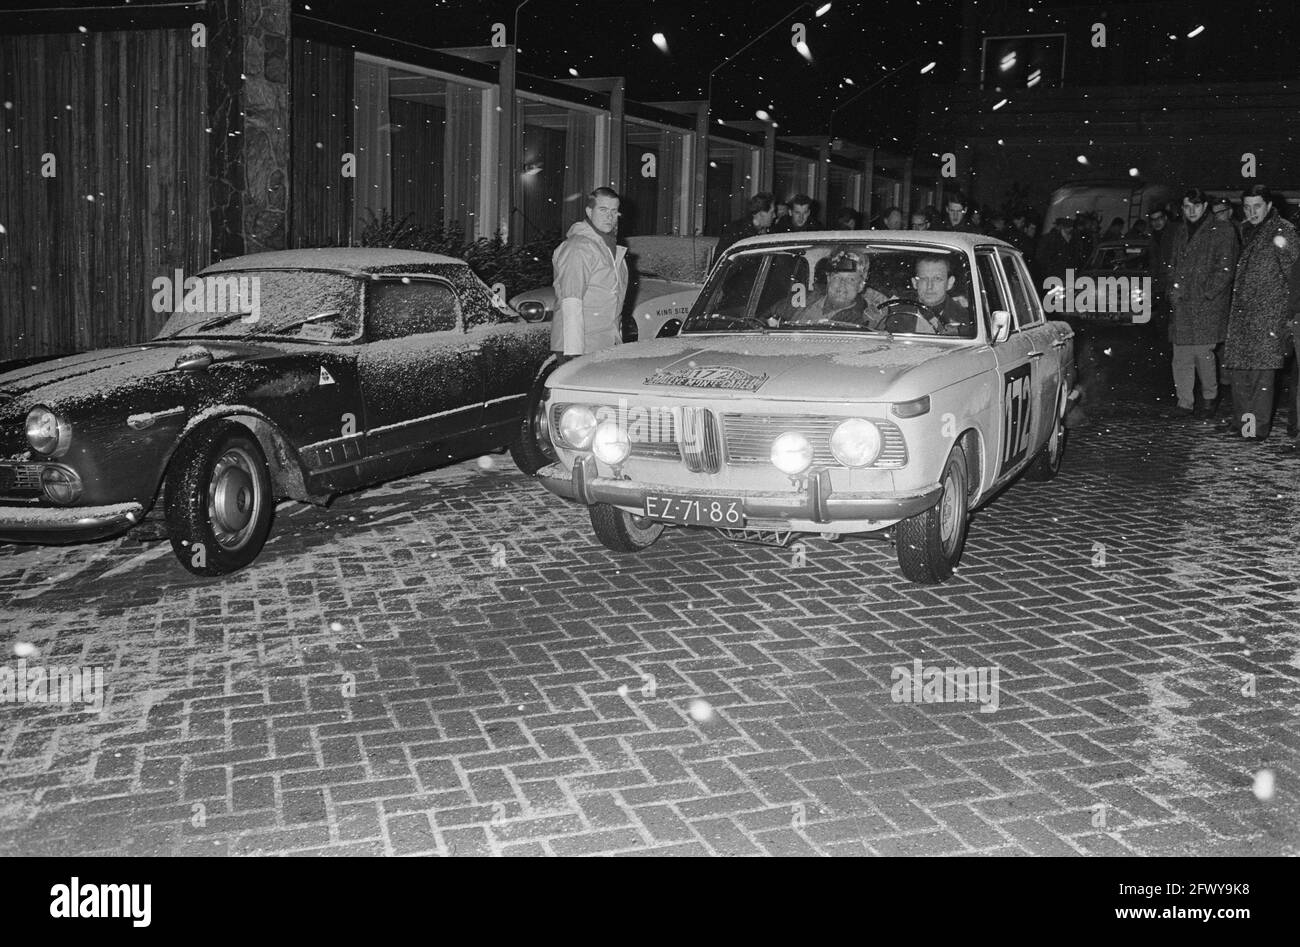 Ralley di Monte Carlo, Rosenblatt e Honhof con BMW, numero di inizio 172, 15 gennaio 1966, Rallys, I Paesi Bassi, foto dell'agenzia stampa del XX secolo, n Foto Stock